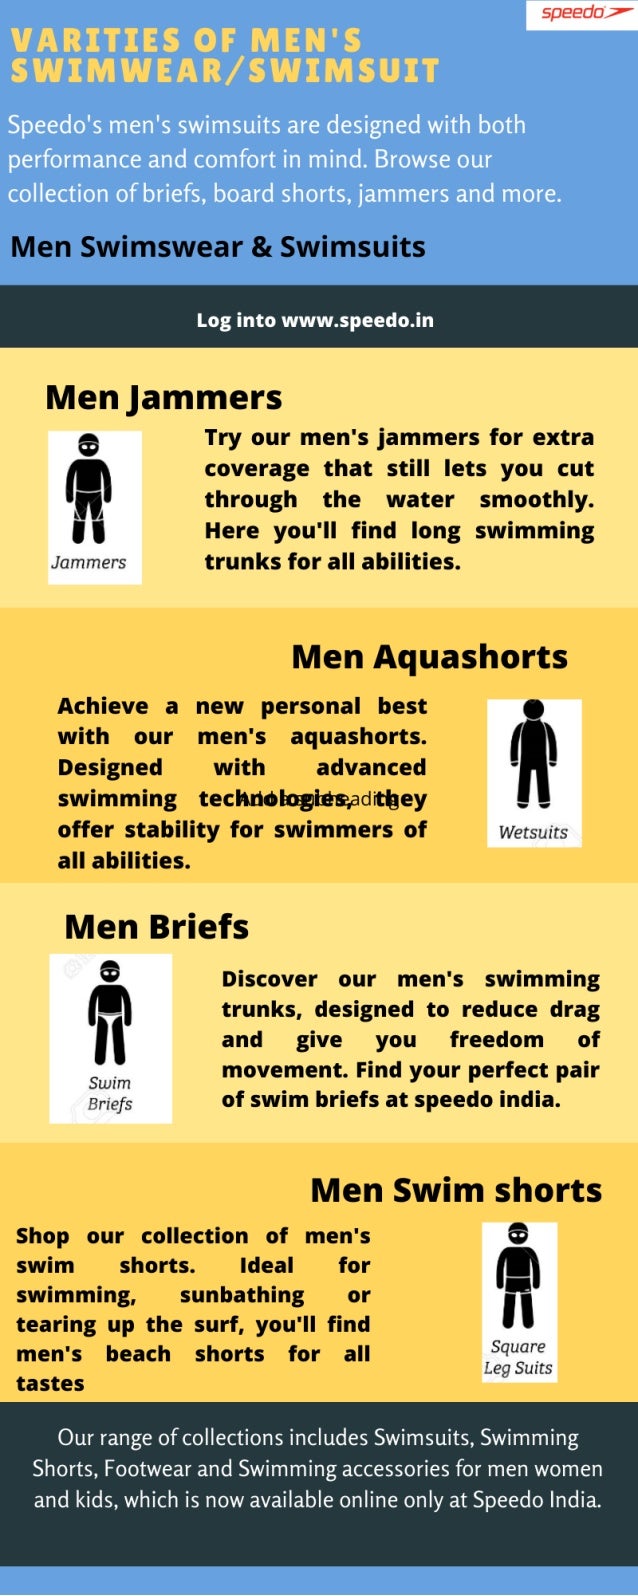 Men's Swimsuits and Swimwear from Speedo India